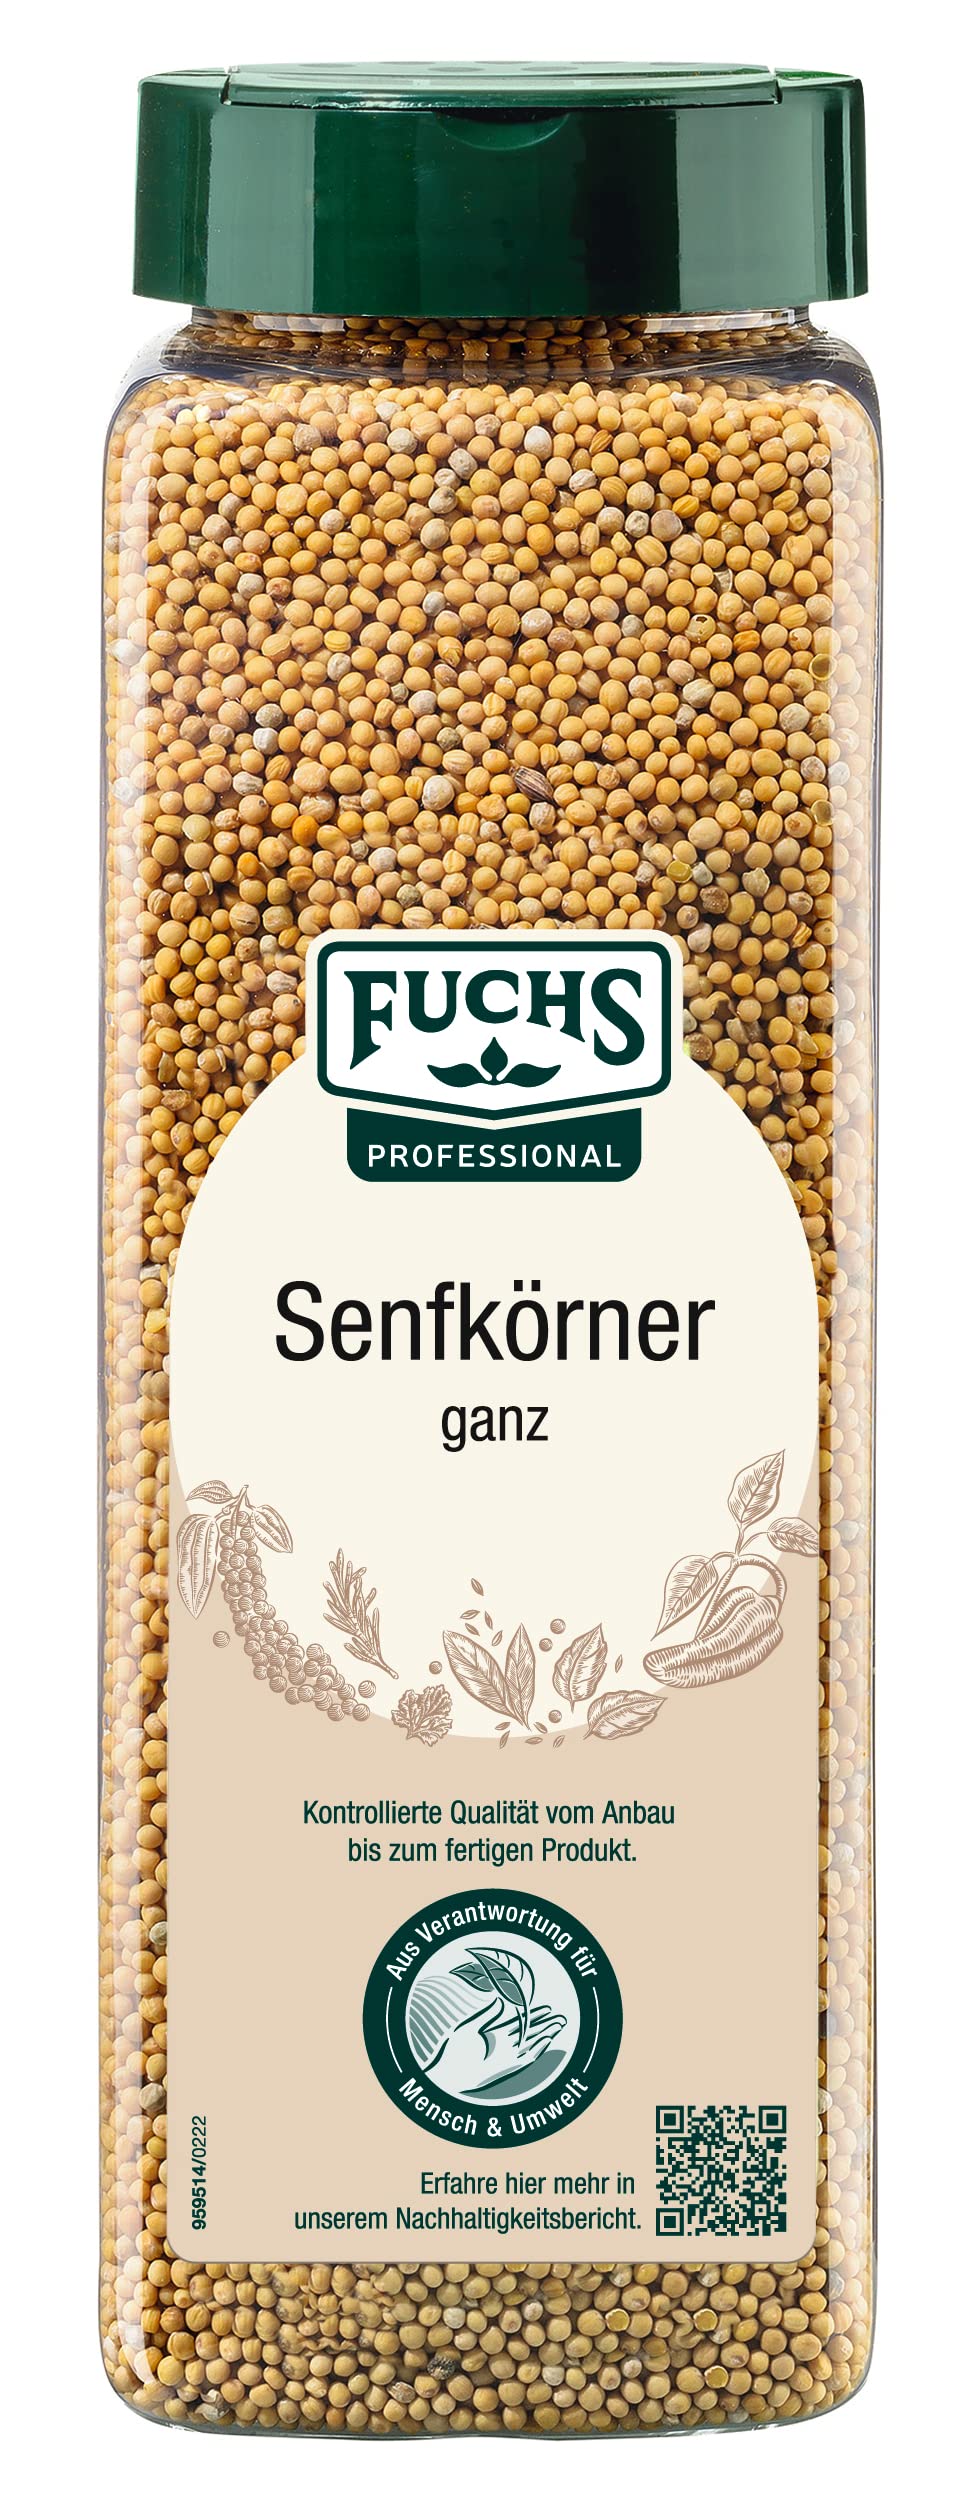 Fuchs Senfkörner, 3er Pack (3 x 700 g)